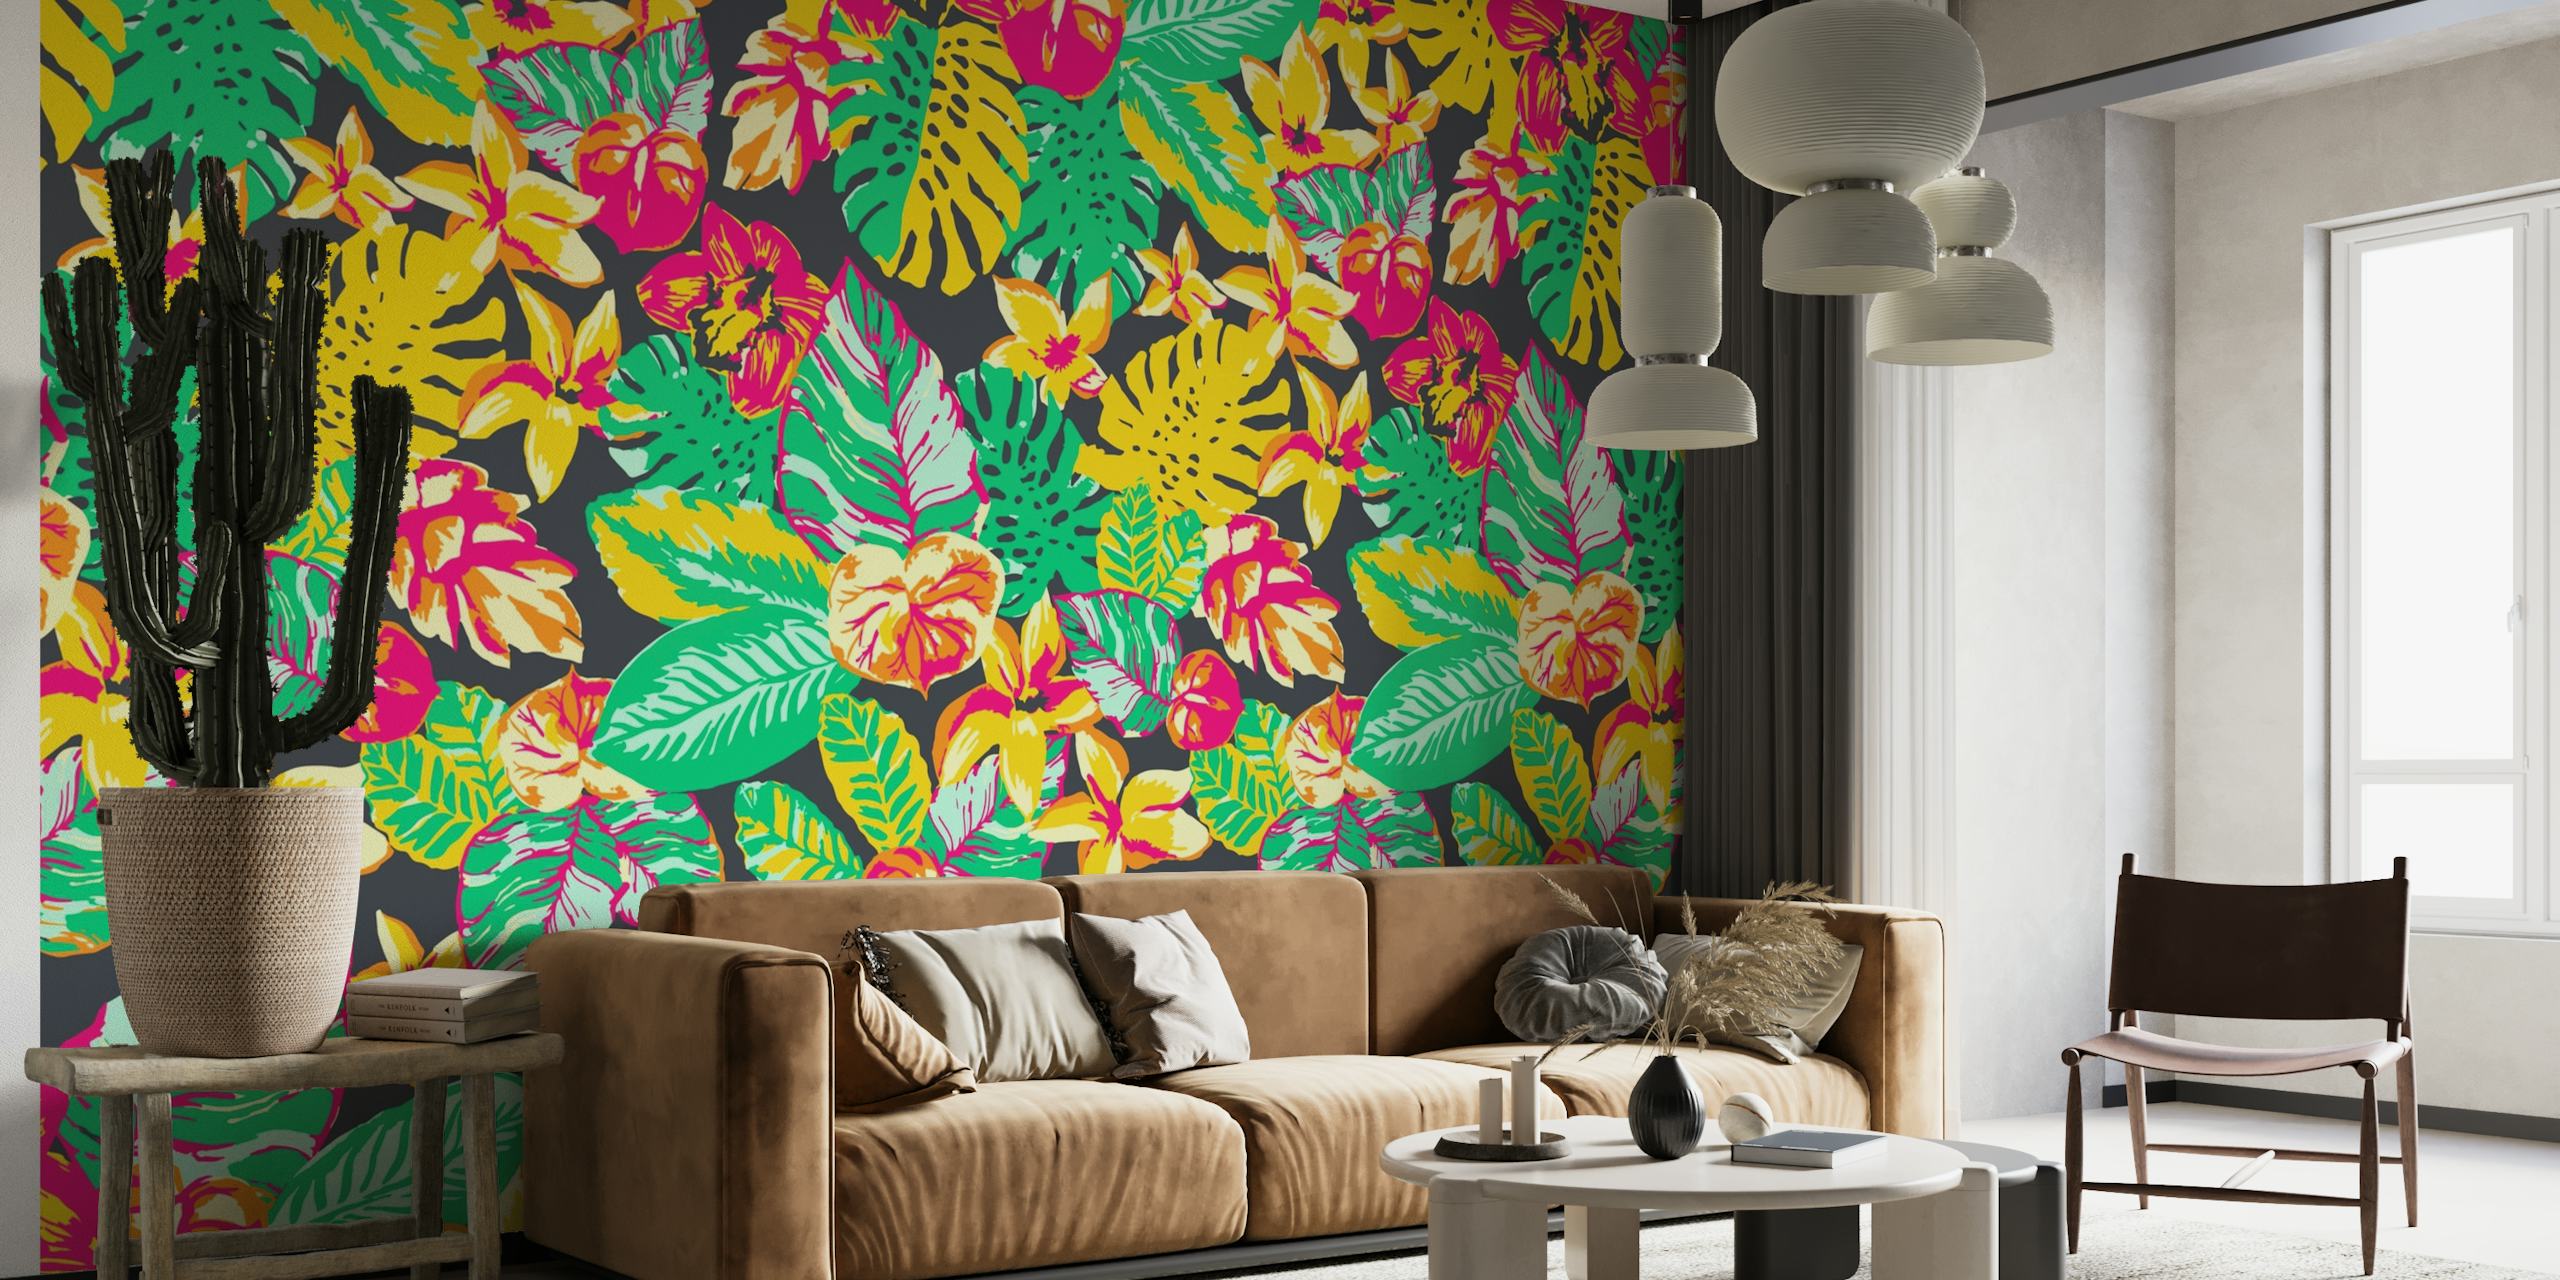 Värikäs trooppinen viidakkokuvioinen seinämaalaus, jossa eksoottisia lehtiä ja kukkia